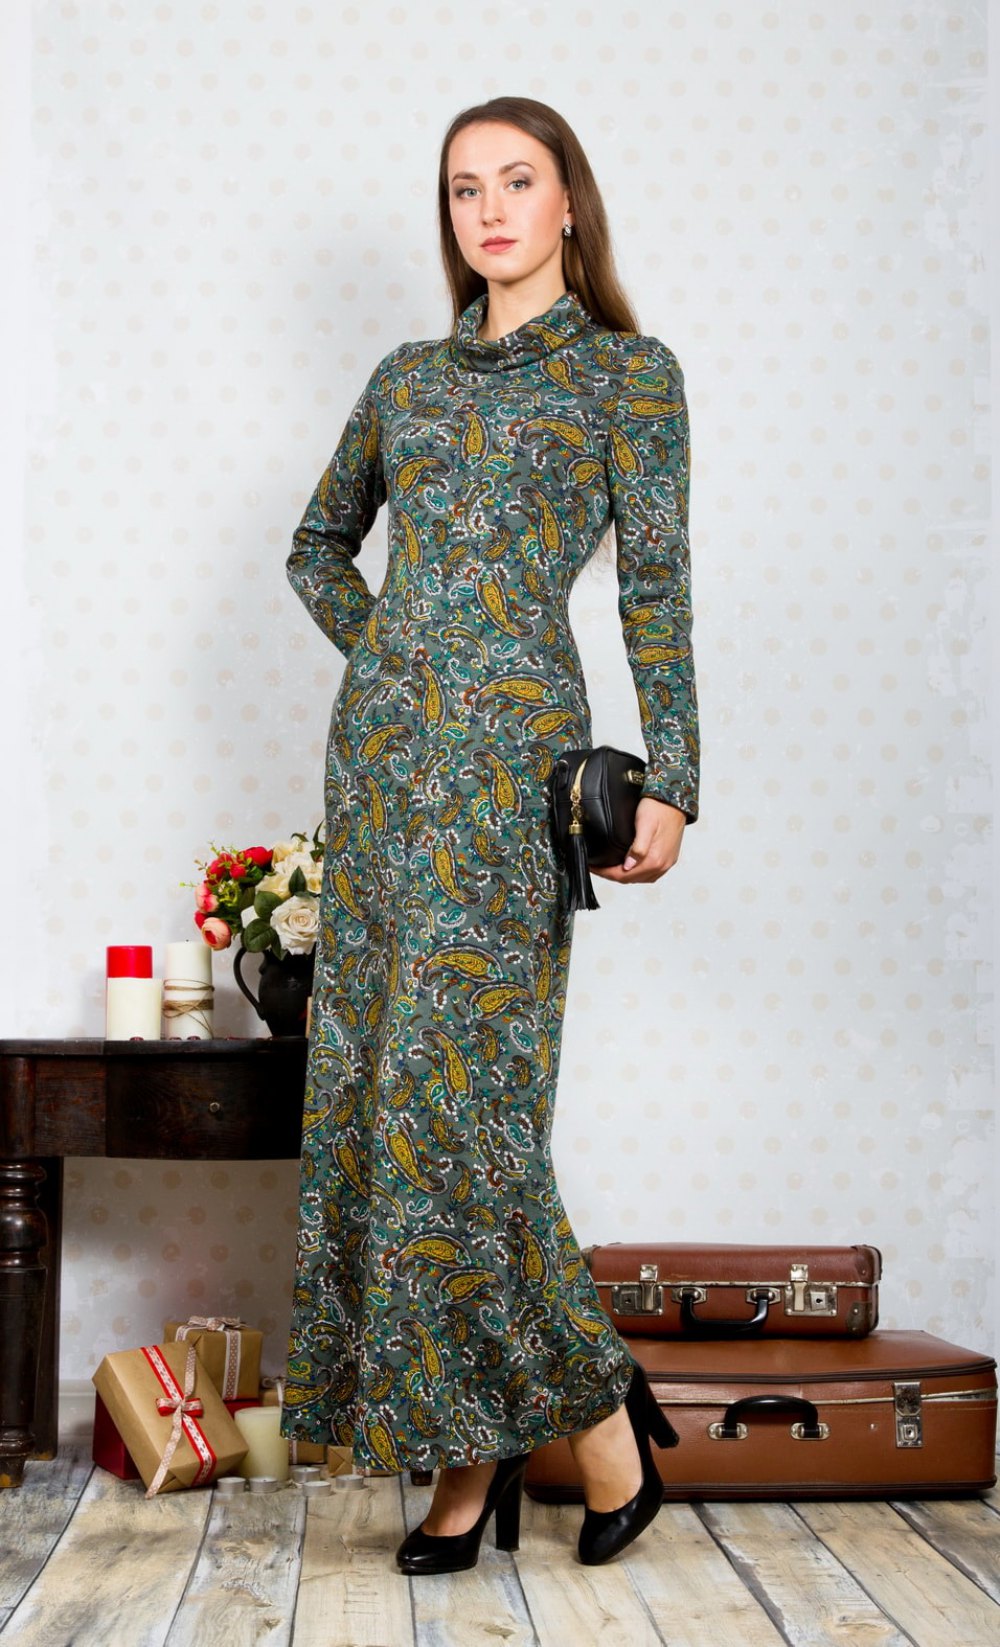 Платье женское "Элегант" меховый длинный модель 685ДЛ/1 океан огурчик